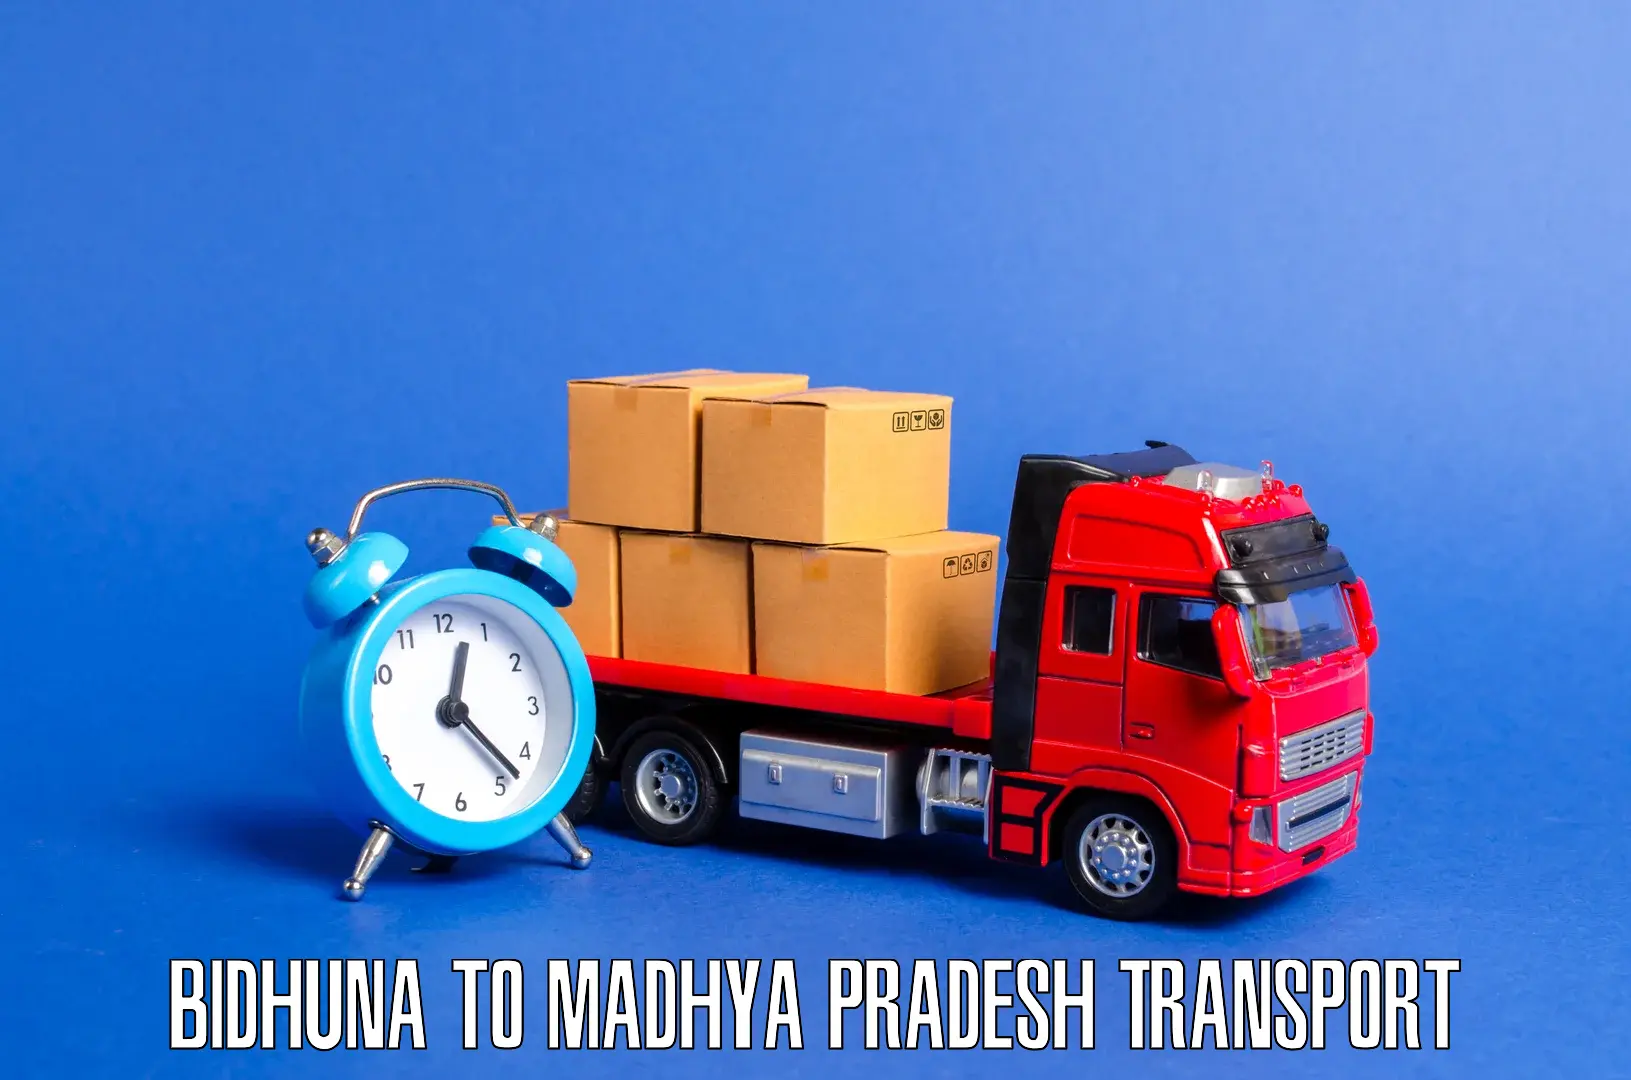 Daily parcel service transport Bidhuna to Rampur Baghelan